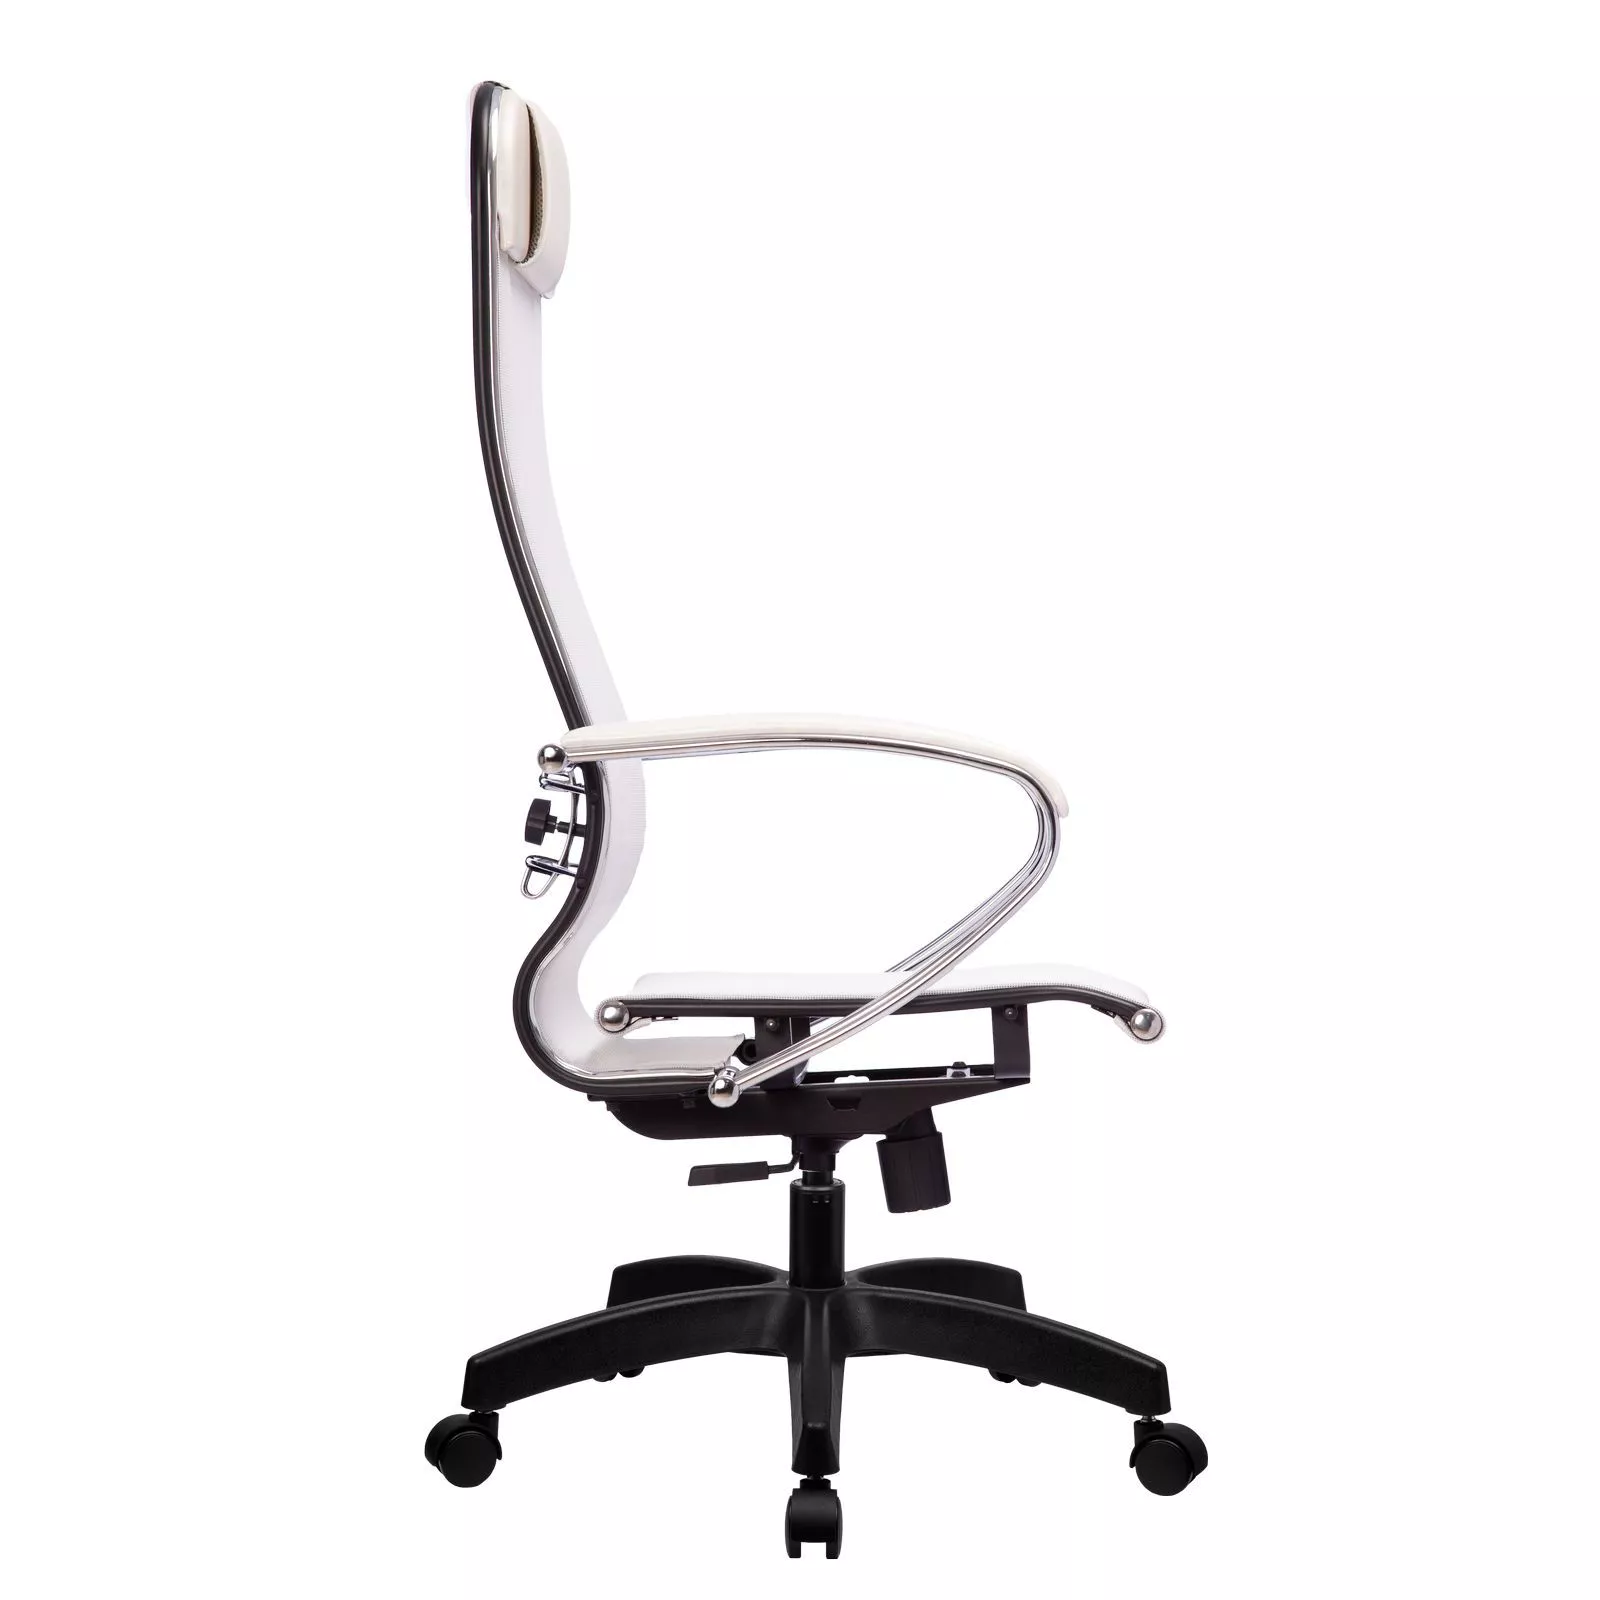 Кресло компьютерное Метта Комплект 4 Pl белый